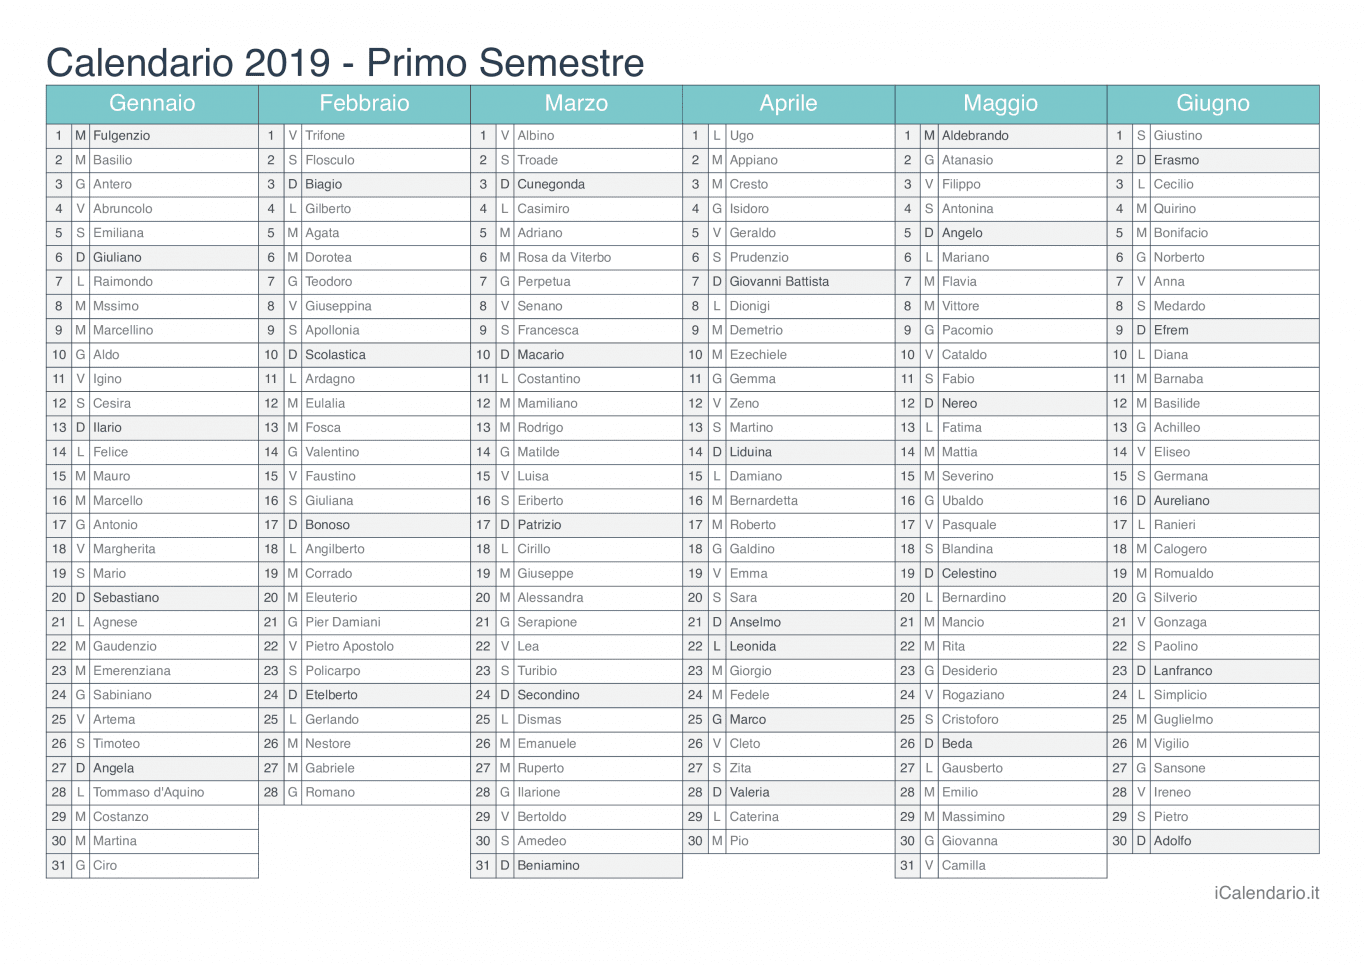 Calendario semestrale 2019 con santi e festivi - Turchese